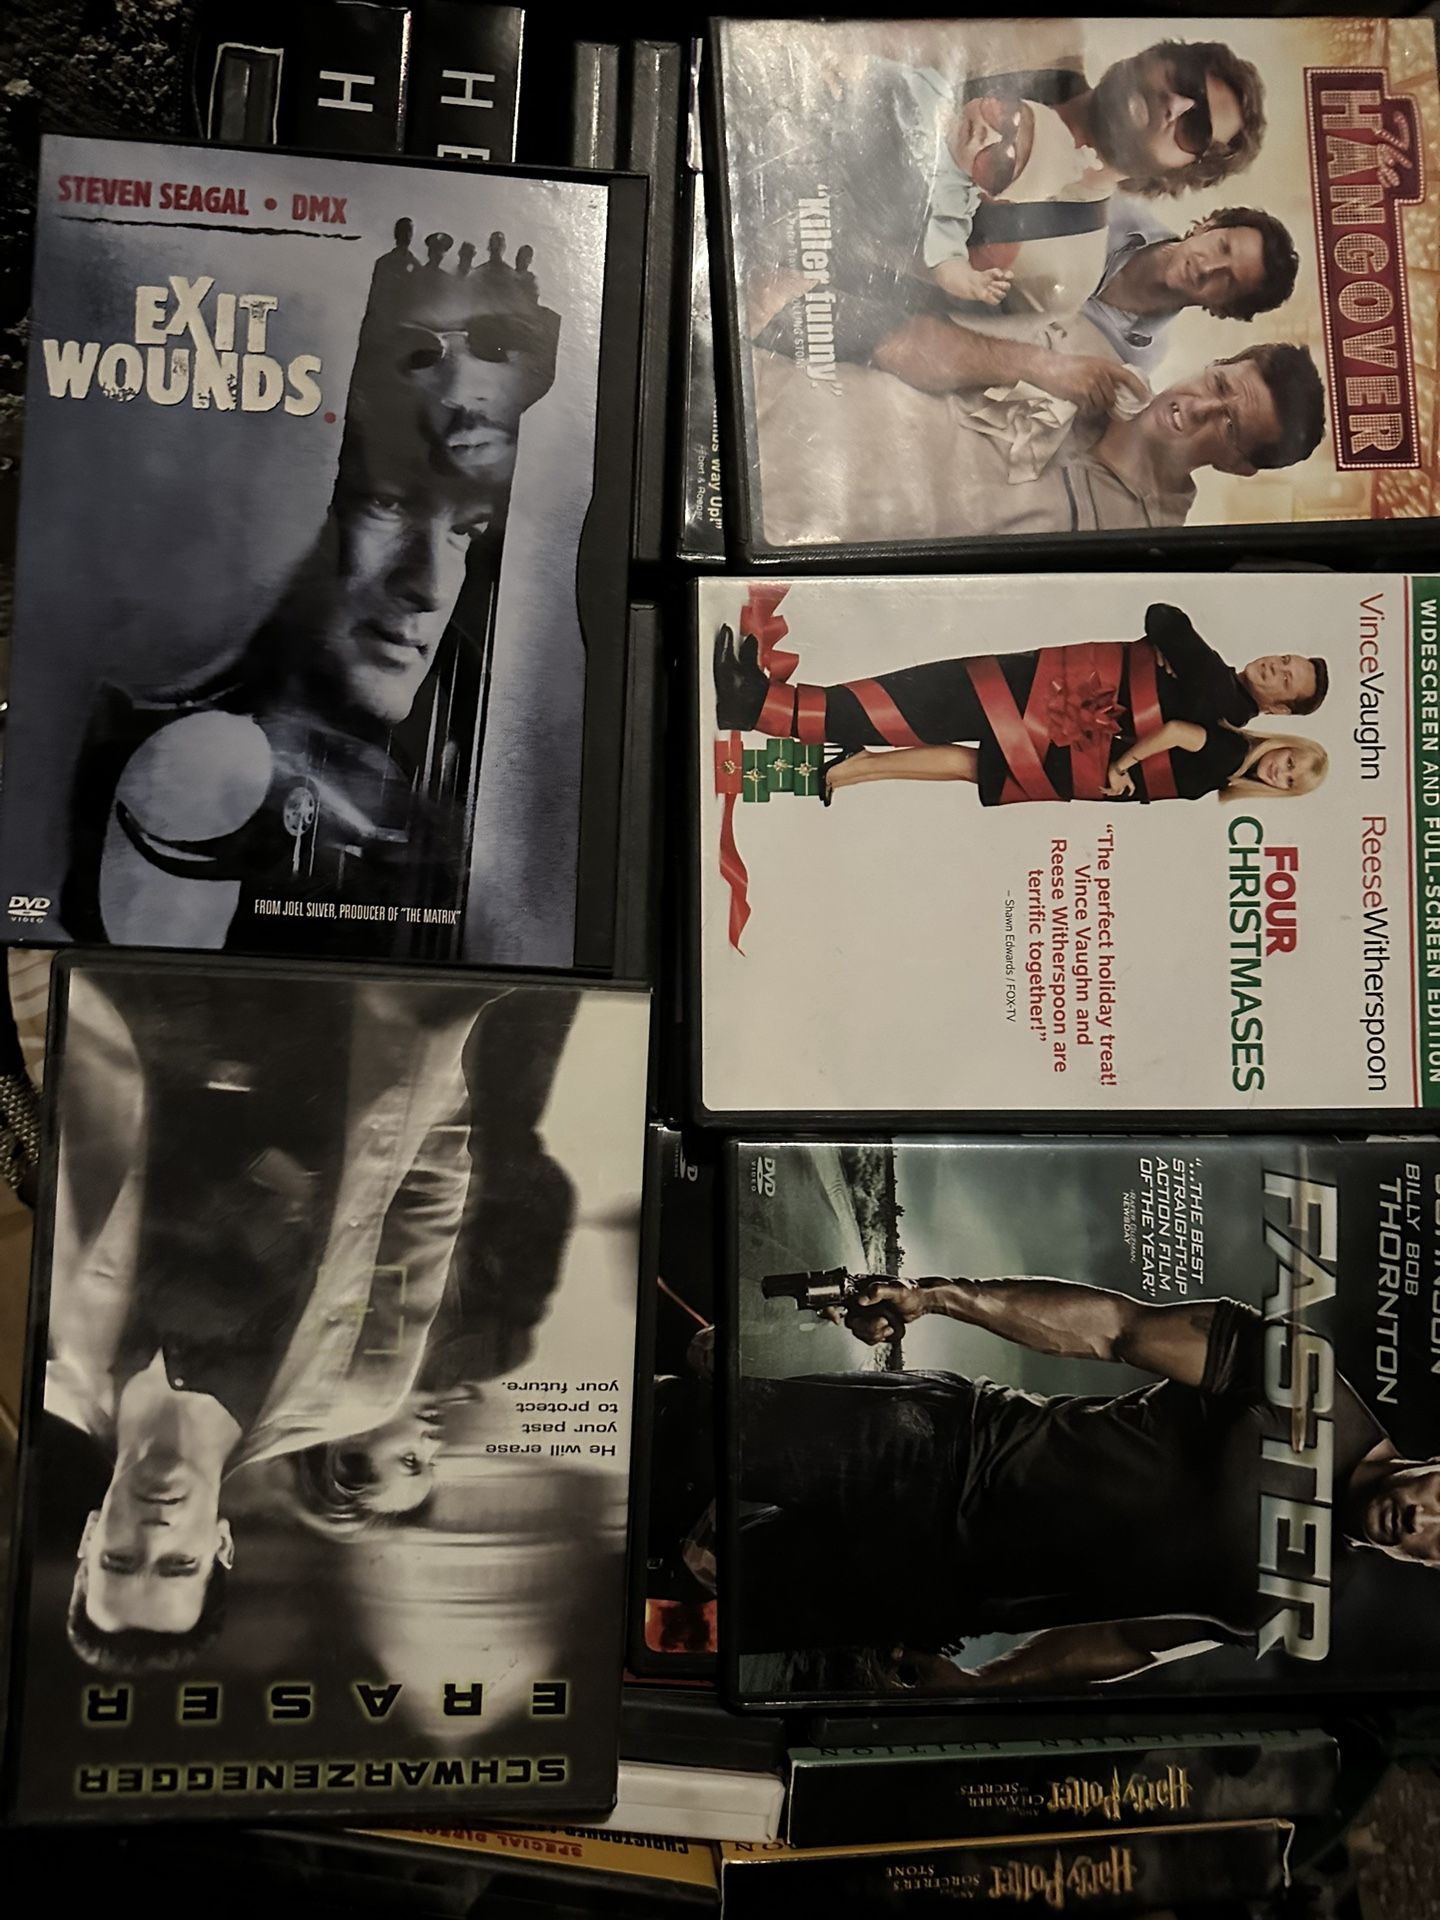 DVD Cases (Empty)